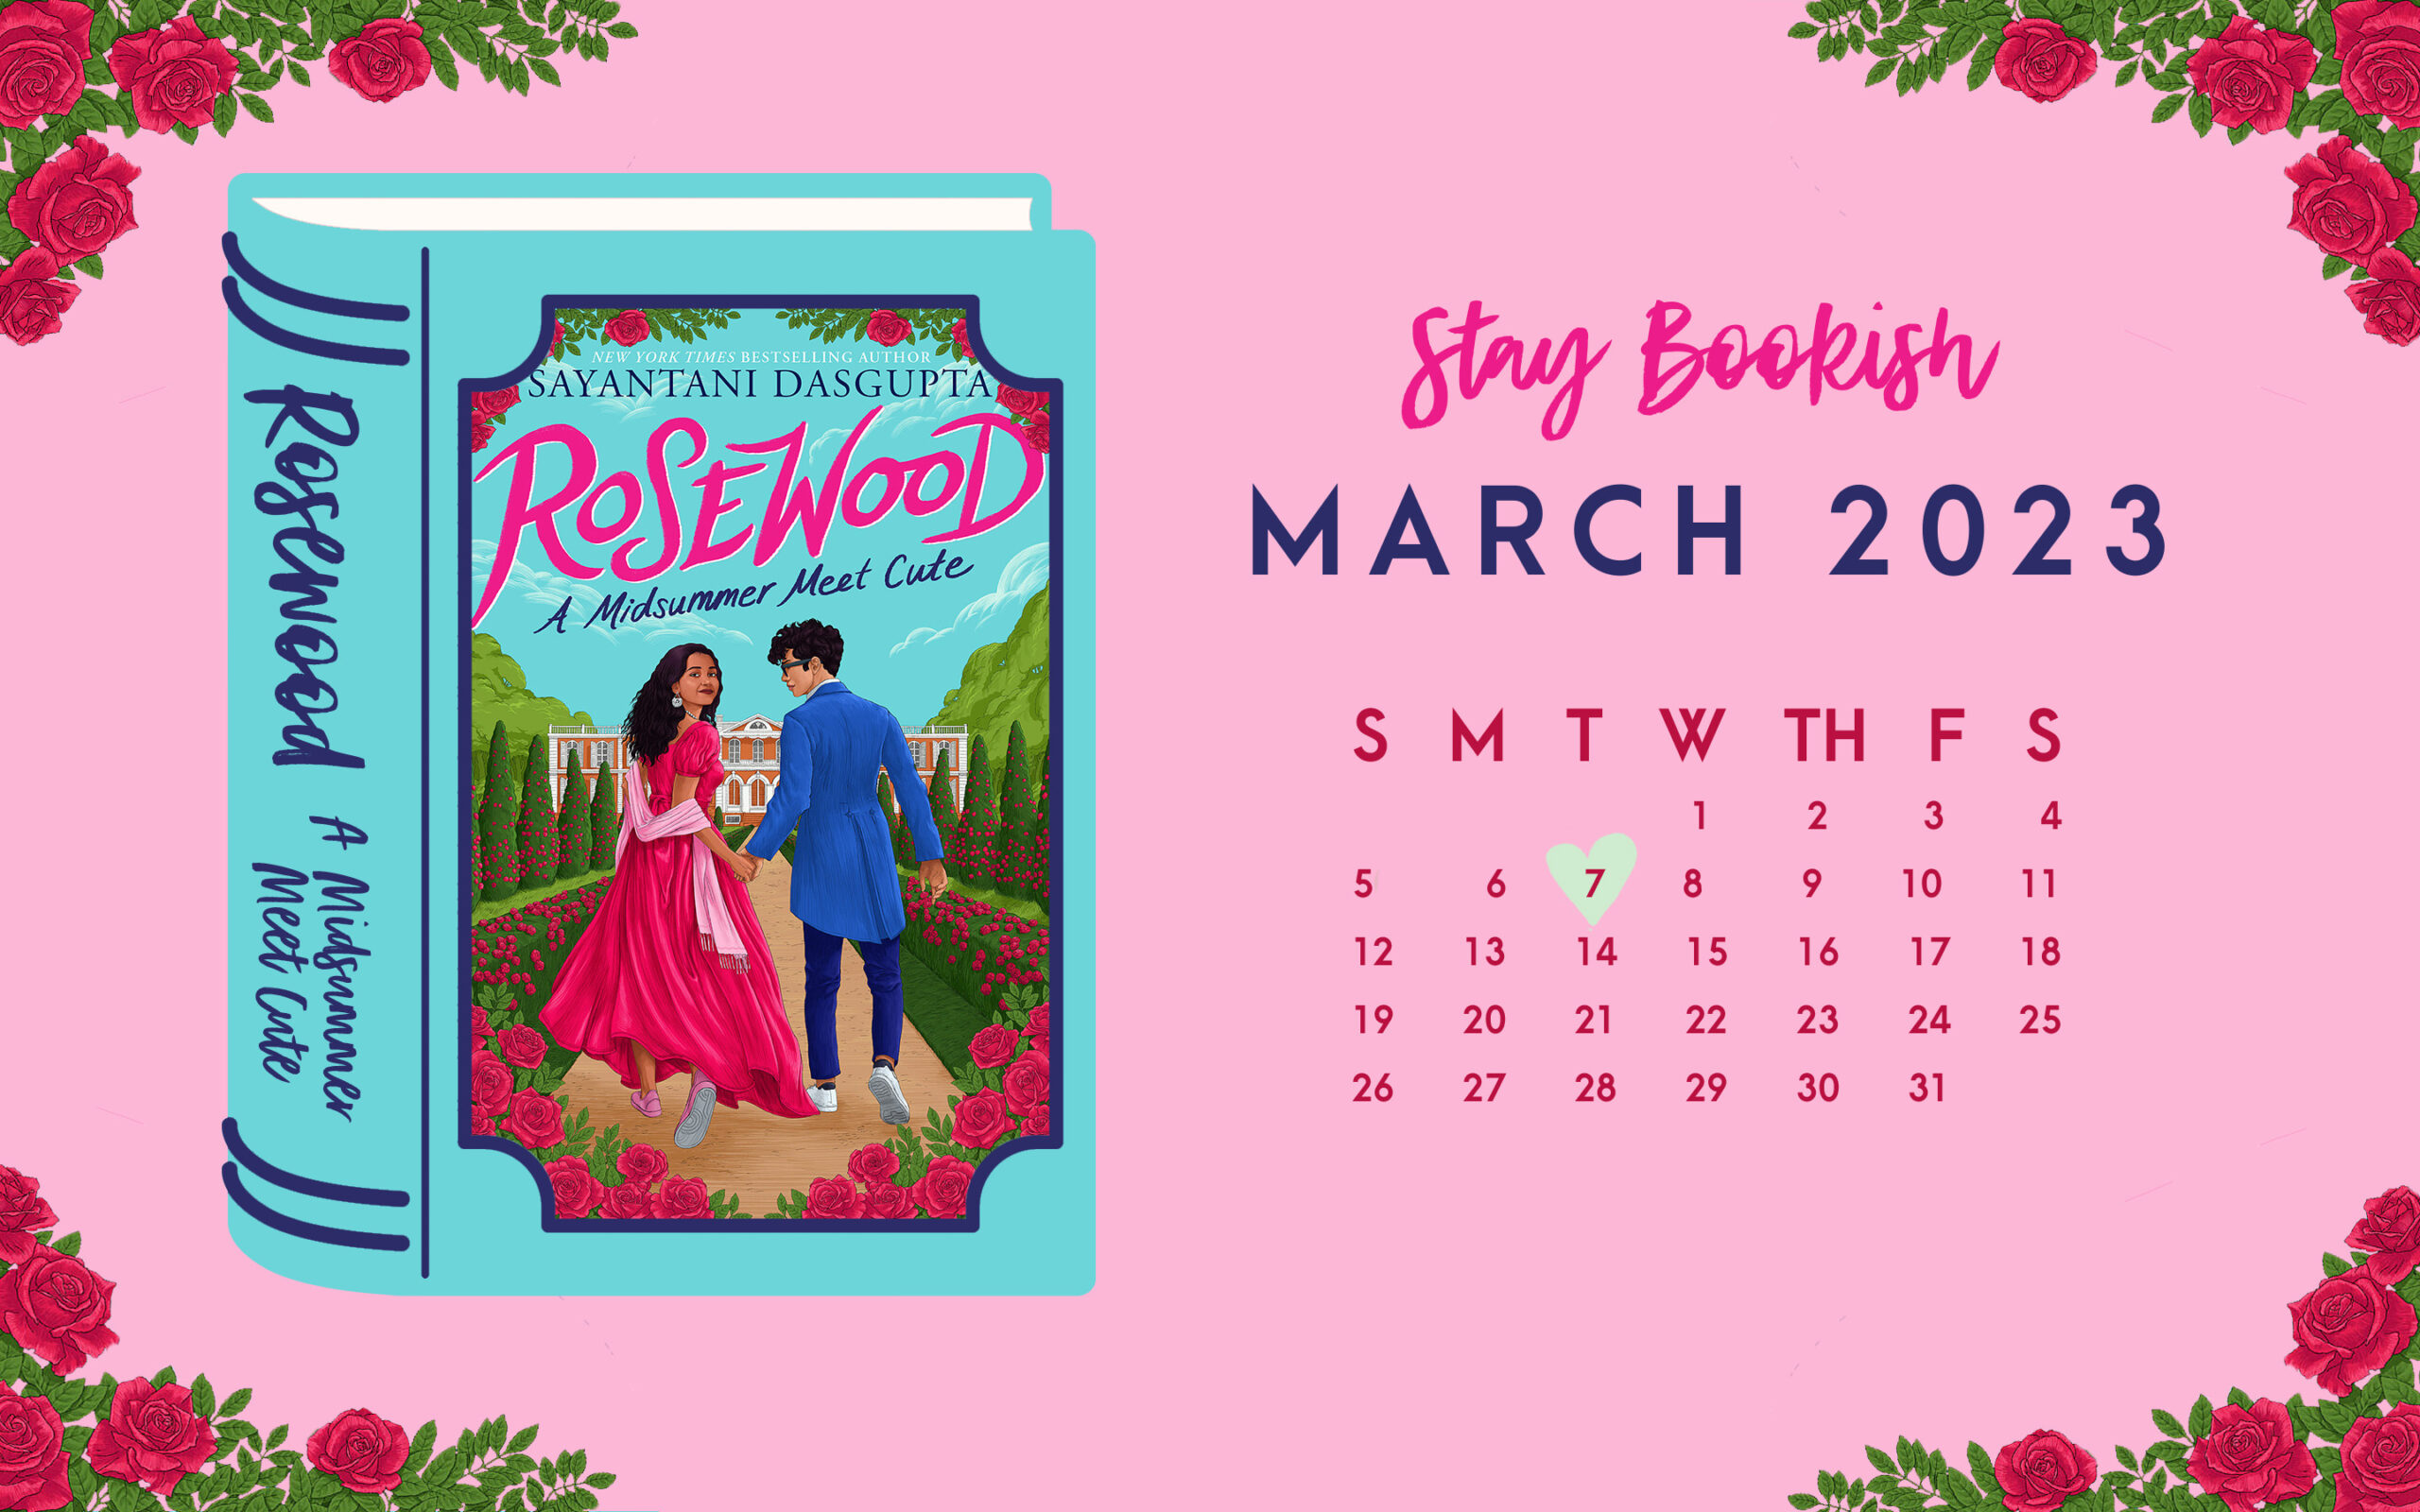 
Stay Bookish March 2023 Desktop Calendar Wallpaper - Rosewood - A Midsummer Meet Cute by Sayantani DasGupta